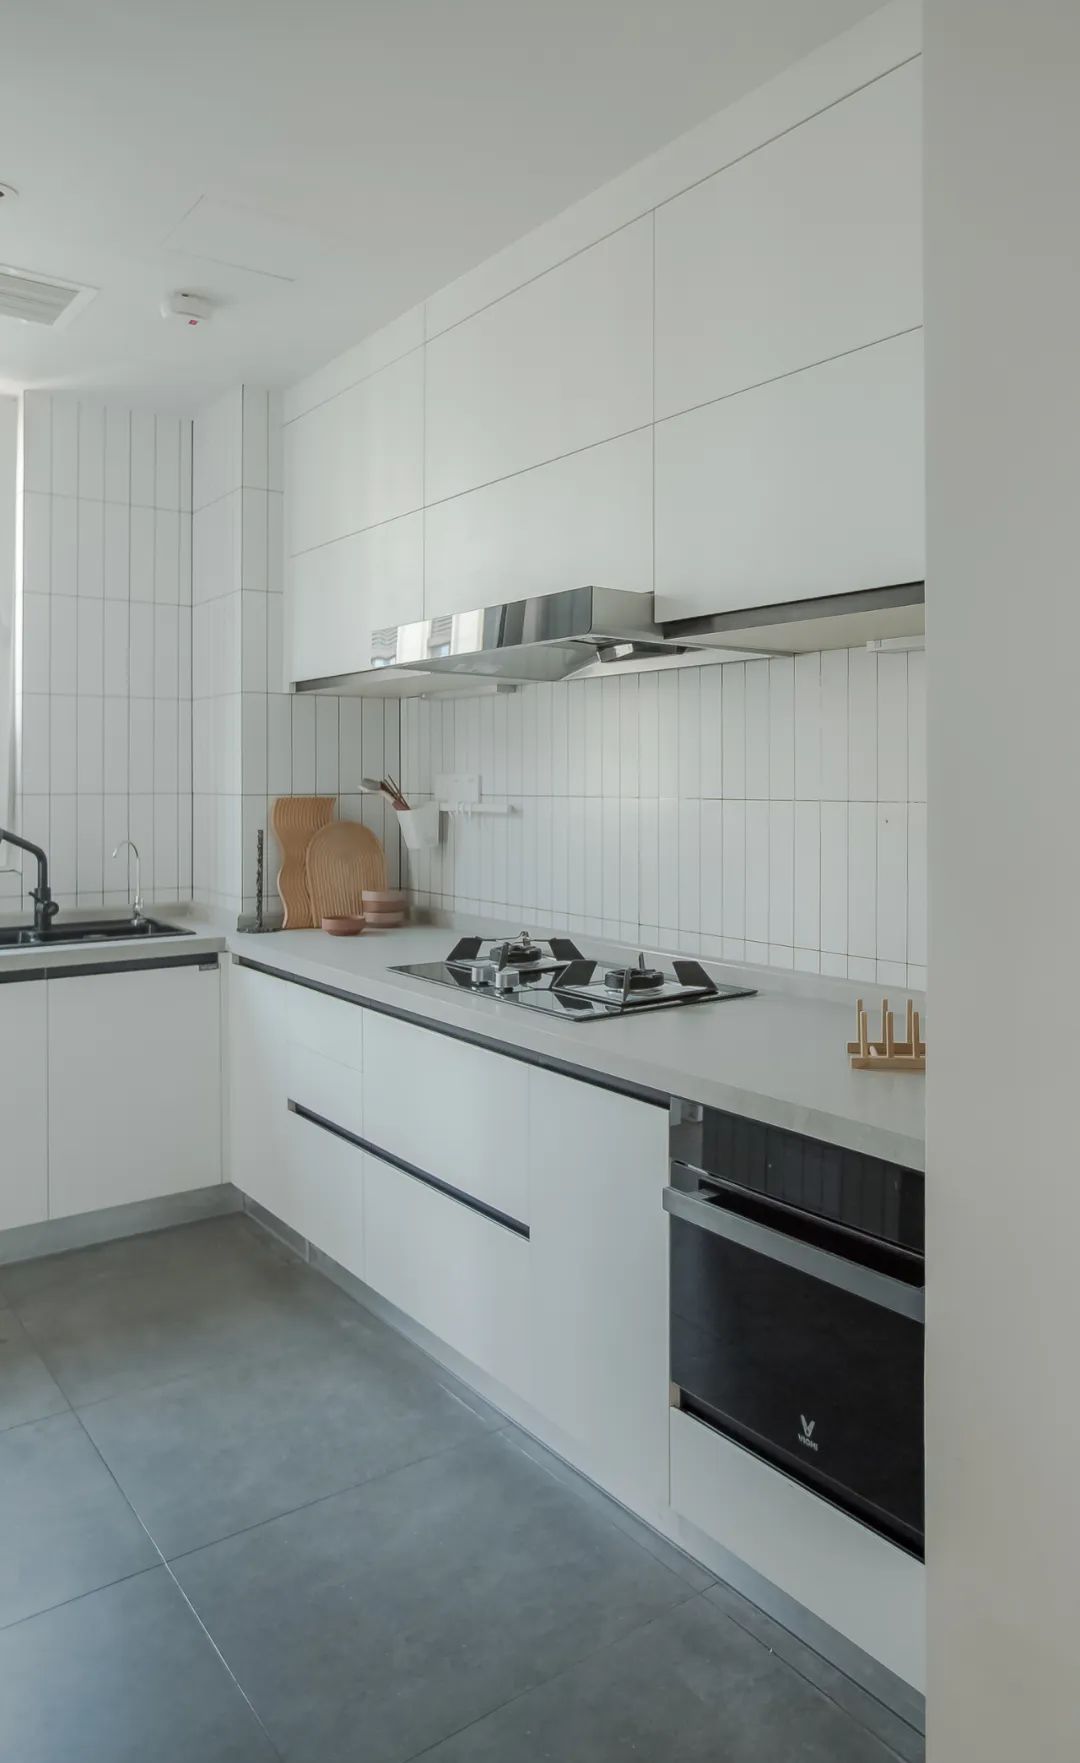 北歐風格家裝設計室內裝修效果圖-廚房